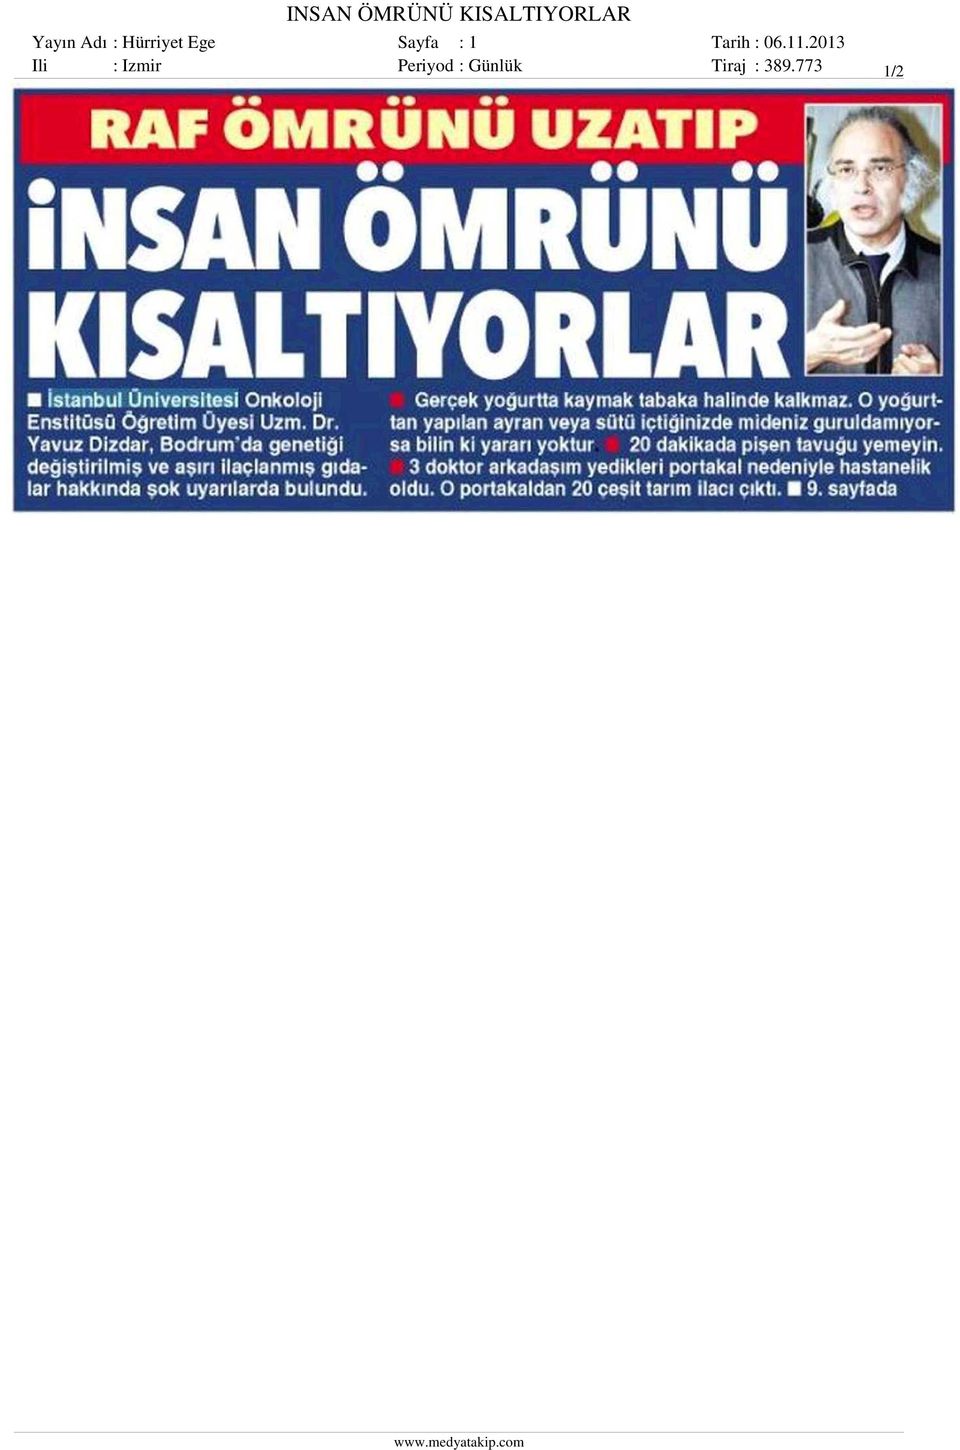 Sayfa : 1 Ili : Izmir